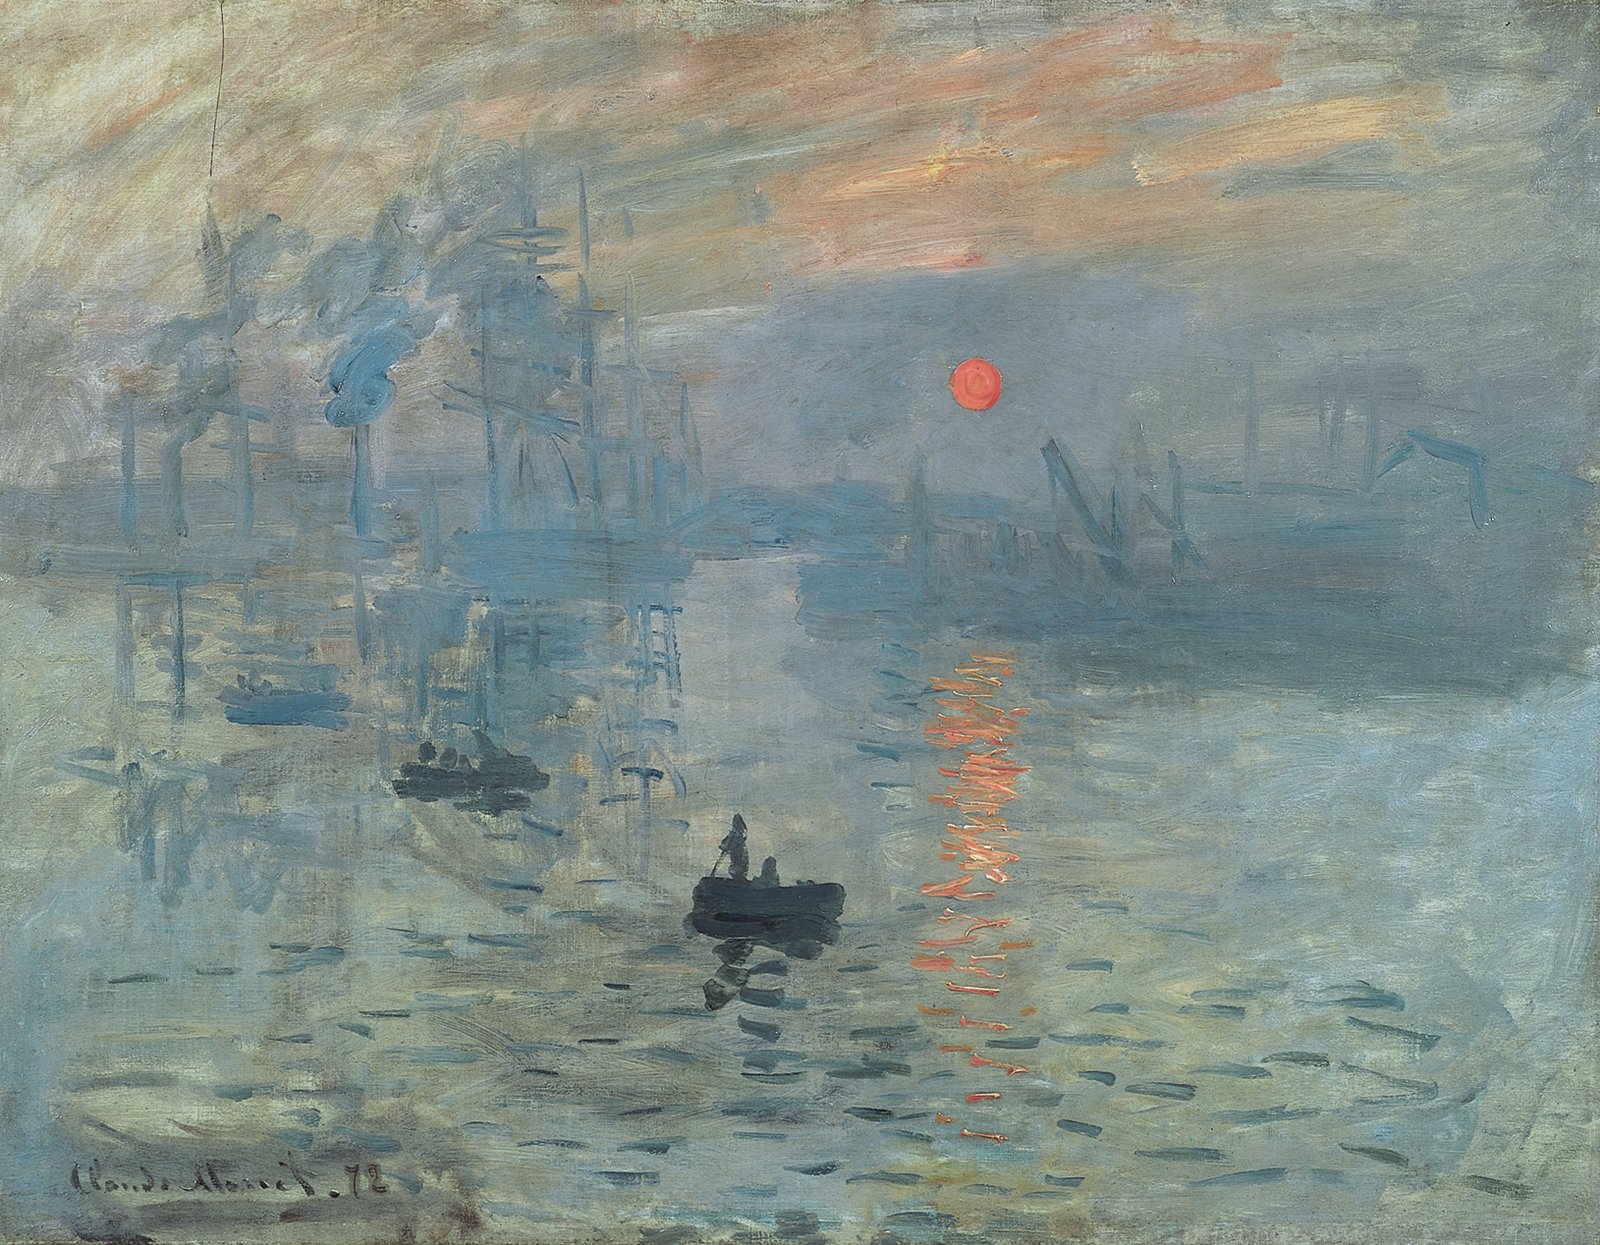 Claude_Monet-_Impression-_soleil_levant.jpg